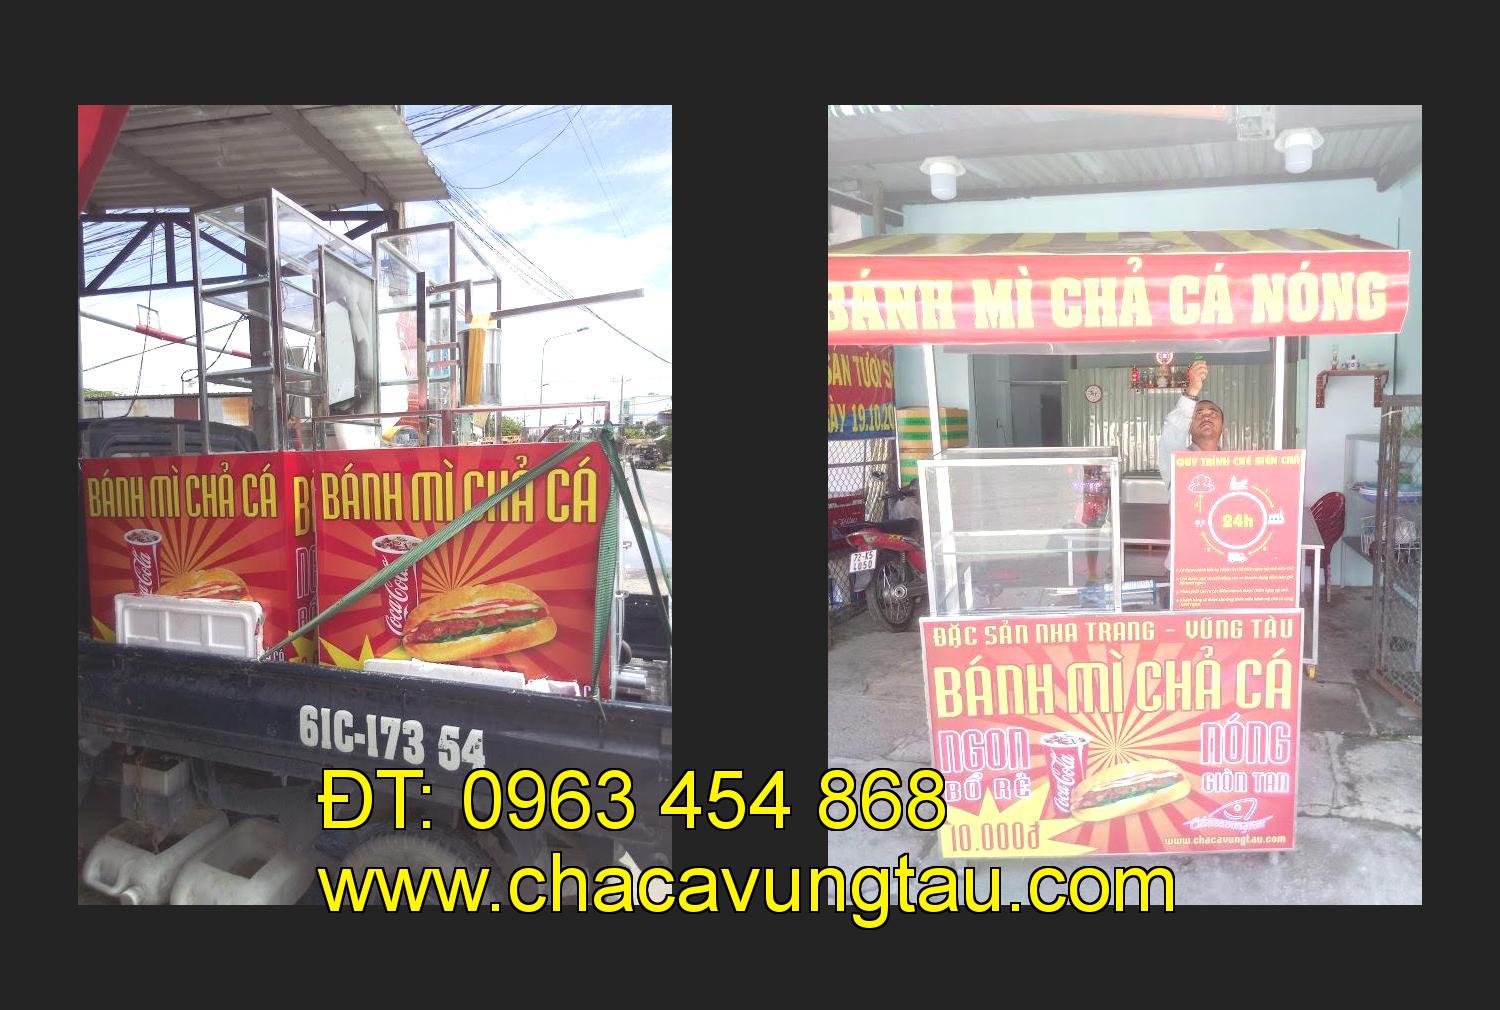 Bán xe bánh mì chả cá tại tỉnh Quảng Ngãi